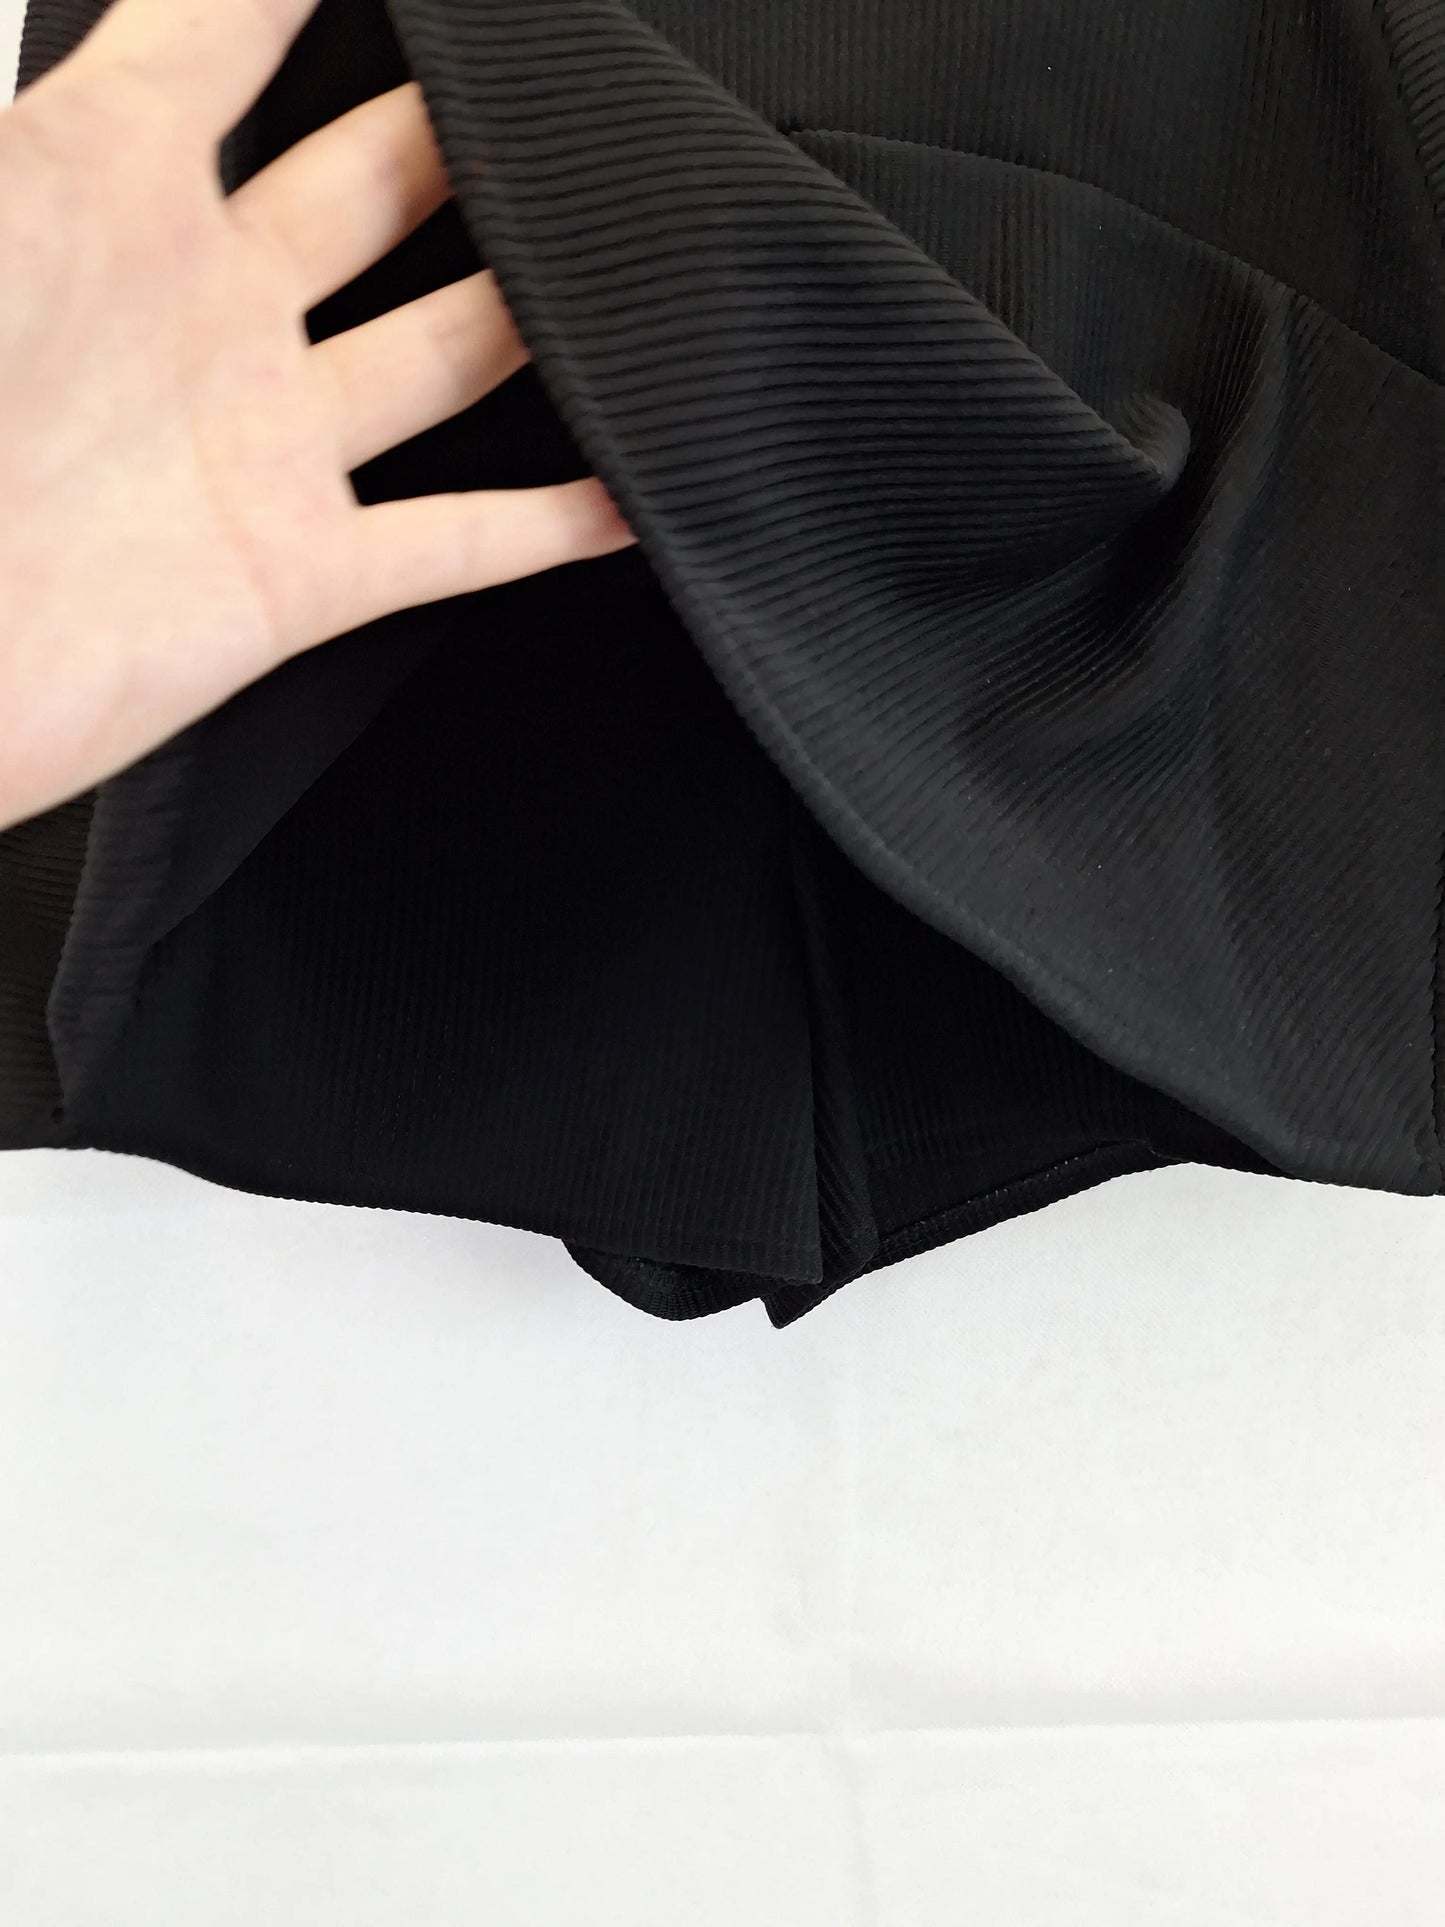 Zara Textured Stretch Mini Skort Size 10 by SwapUp-Online Second Hand Store-Online Thrift Store